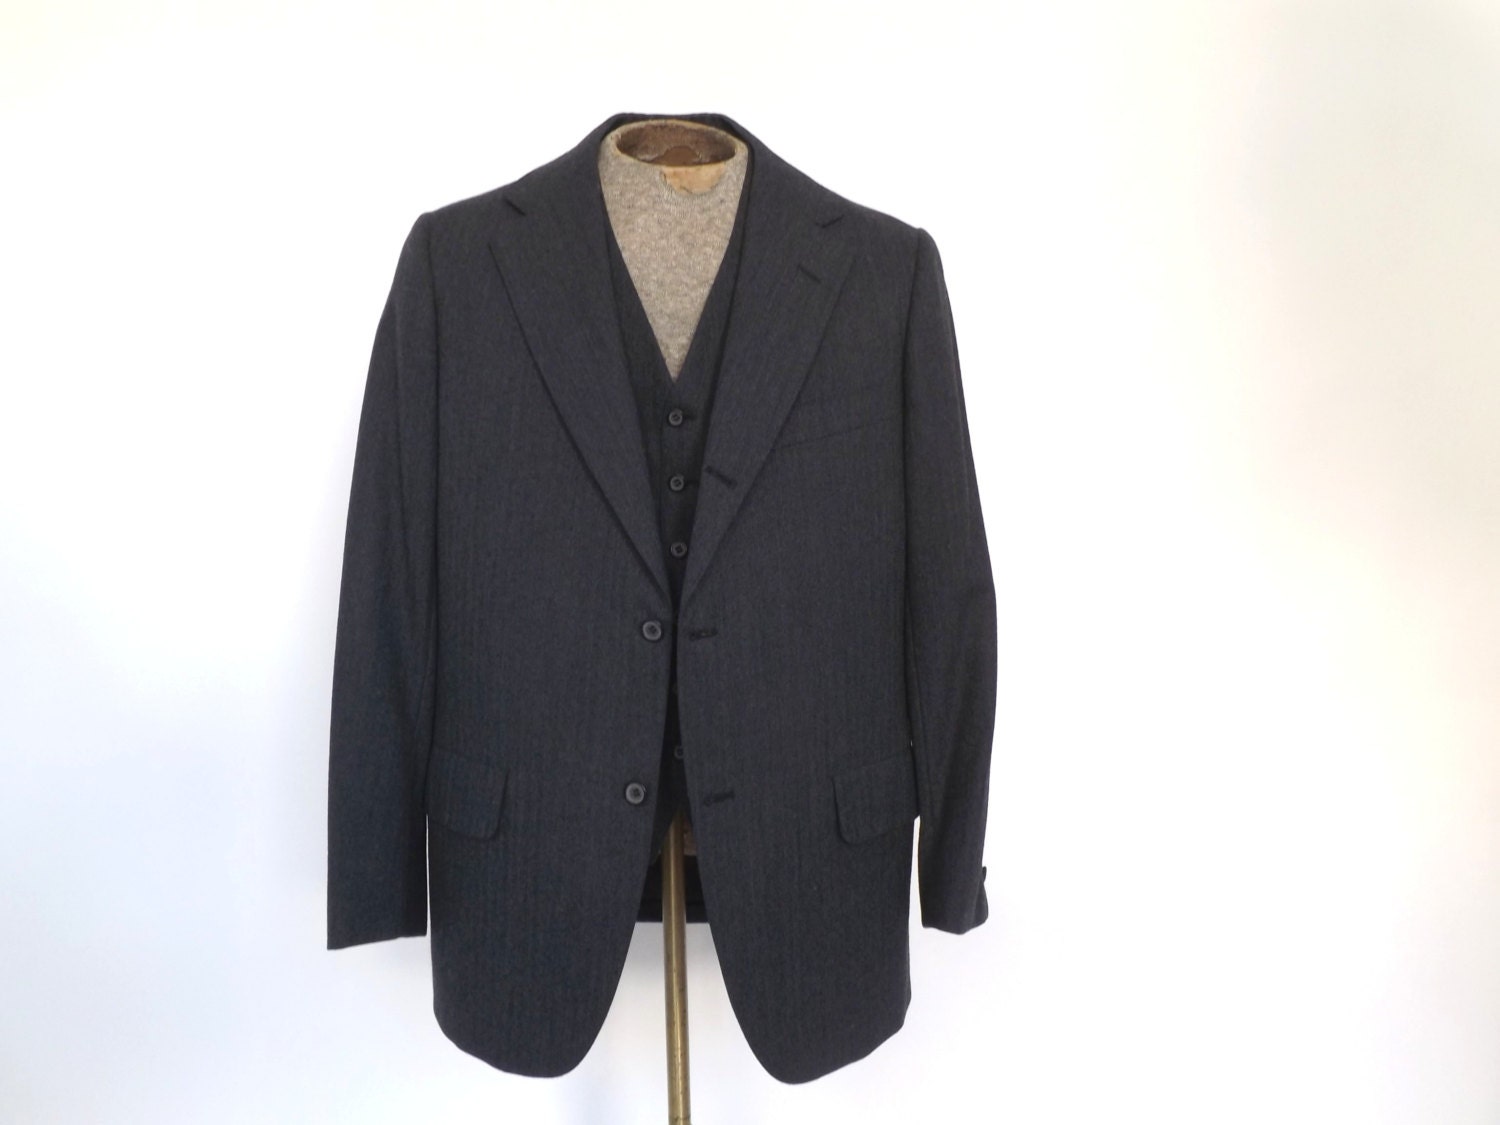 Vintage Men's Two Piece Suit Charcoal Gray Sport Coat